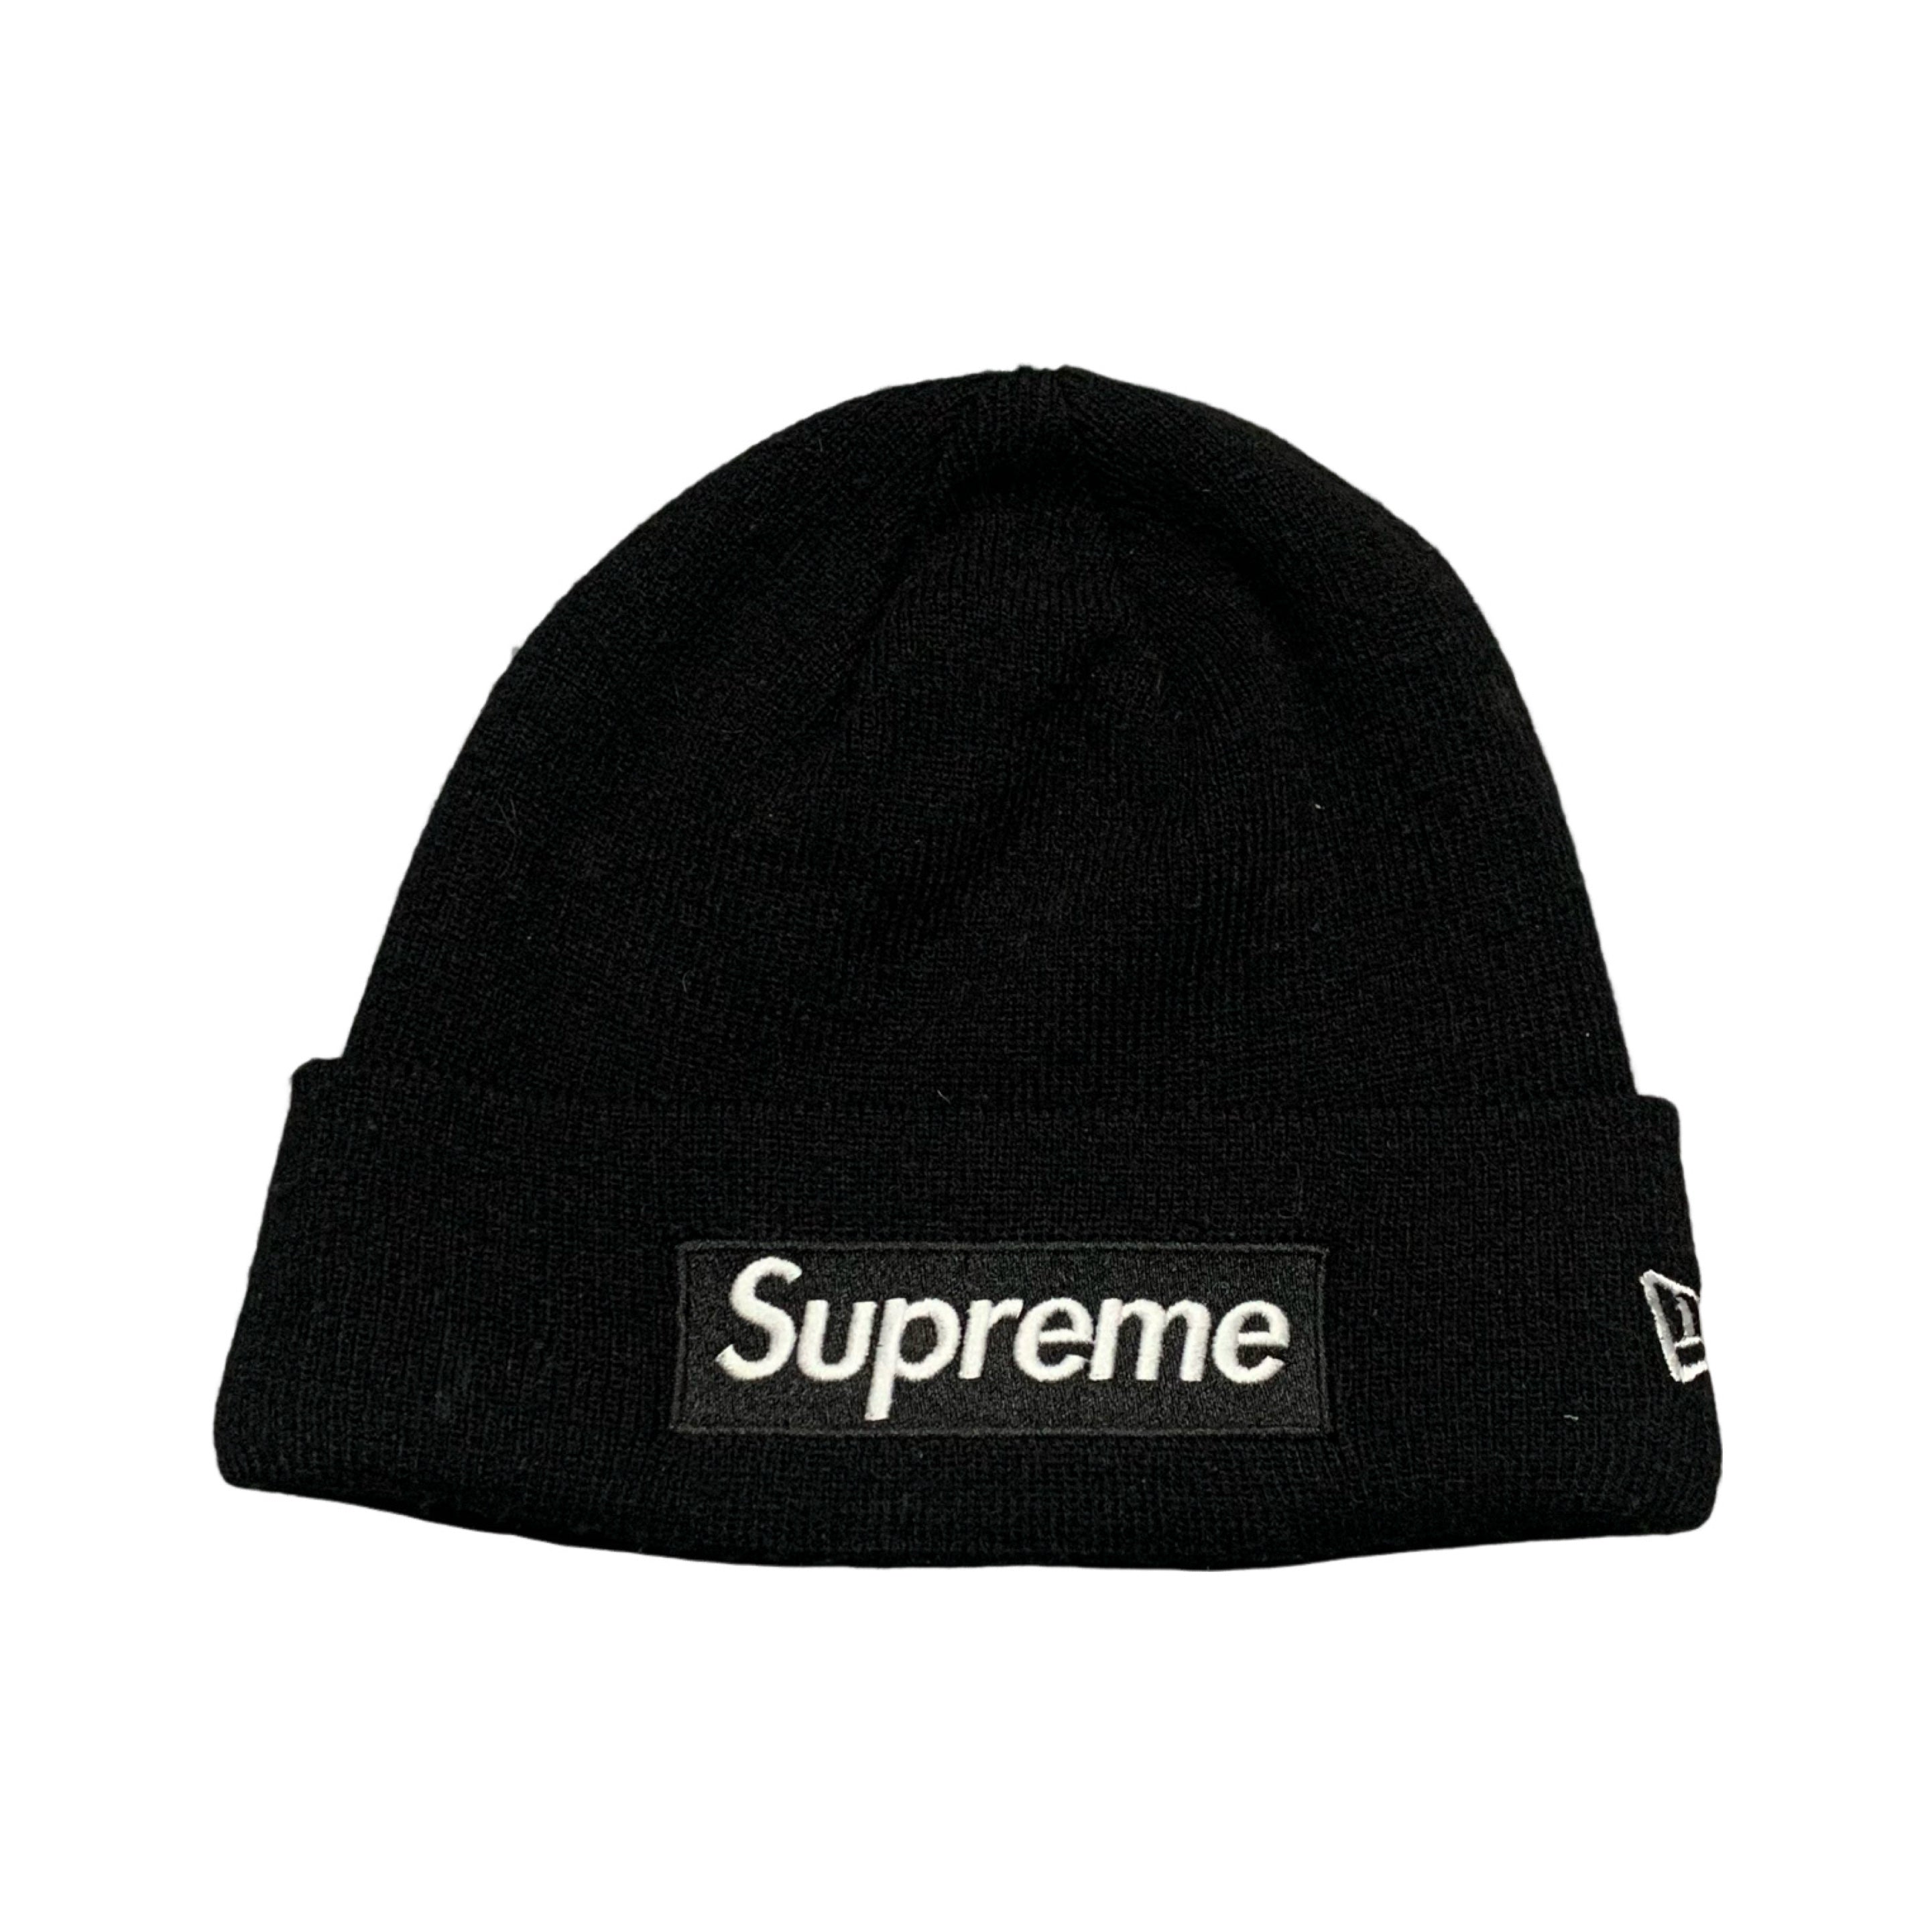 Supreme Beanie Box Logo New Era Black Beanie Hat